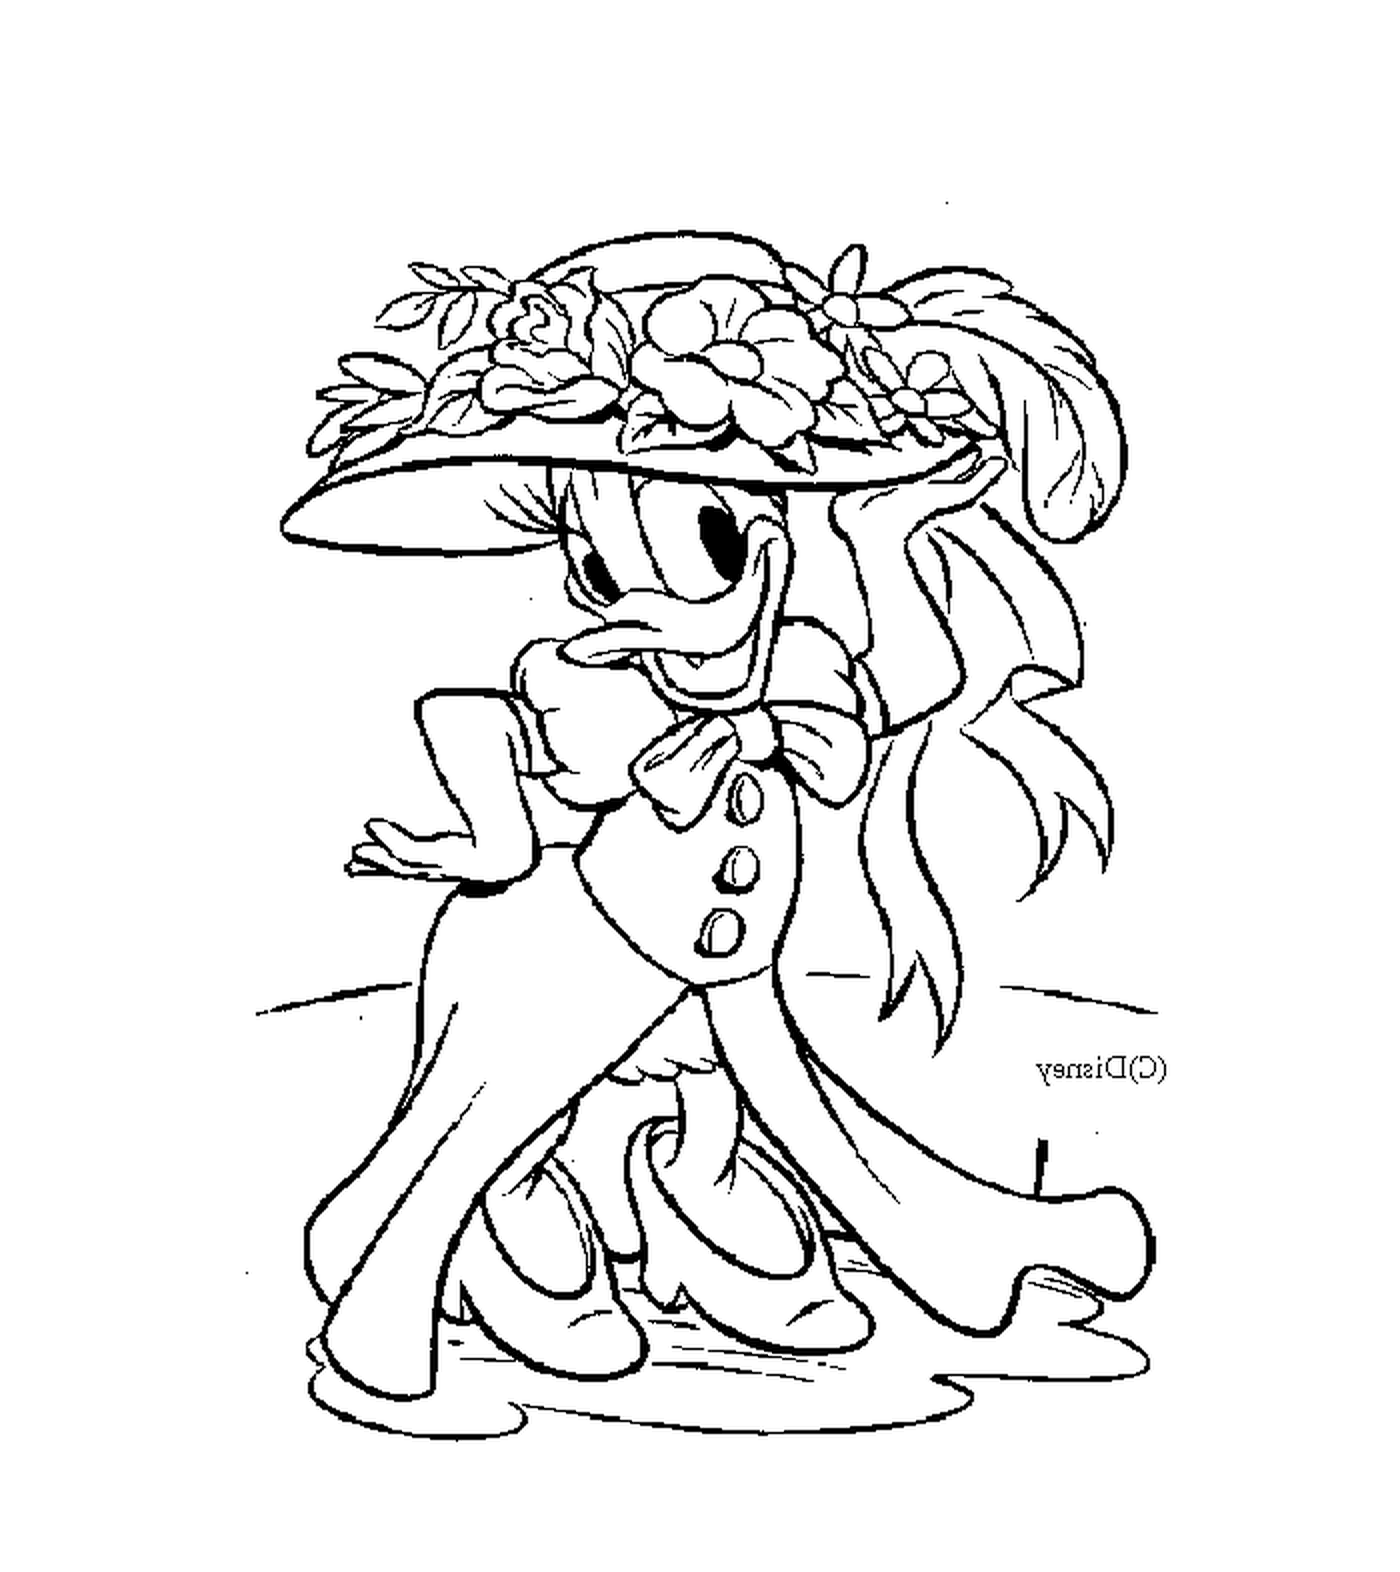  Daisy, elegante con su gran sombrero 